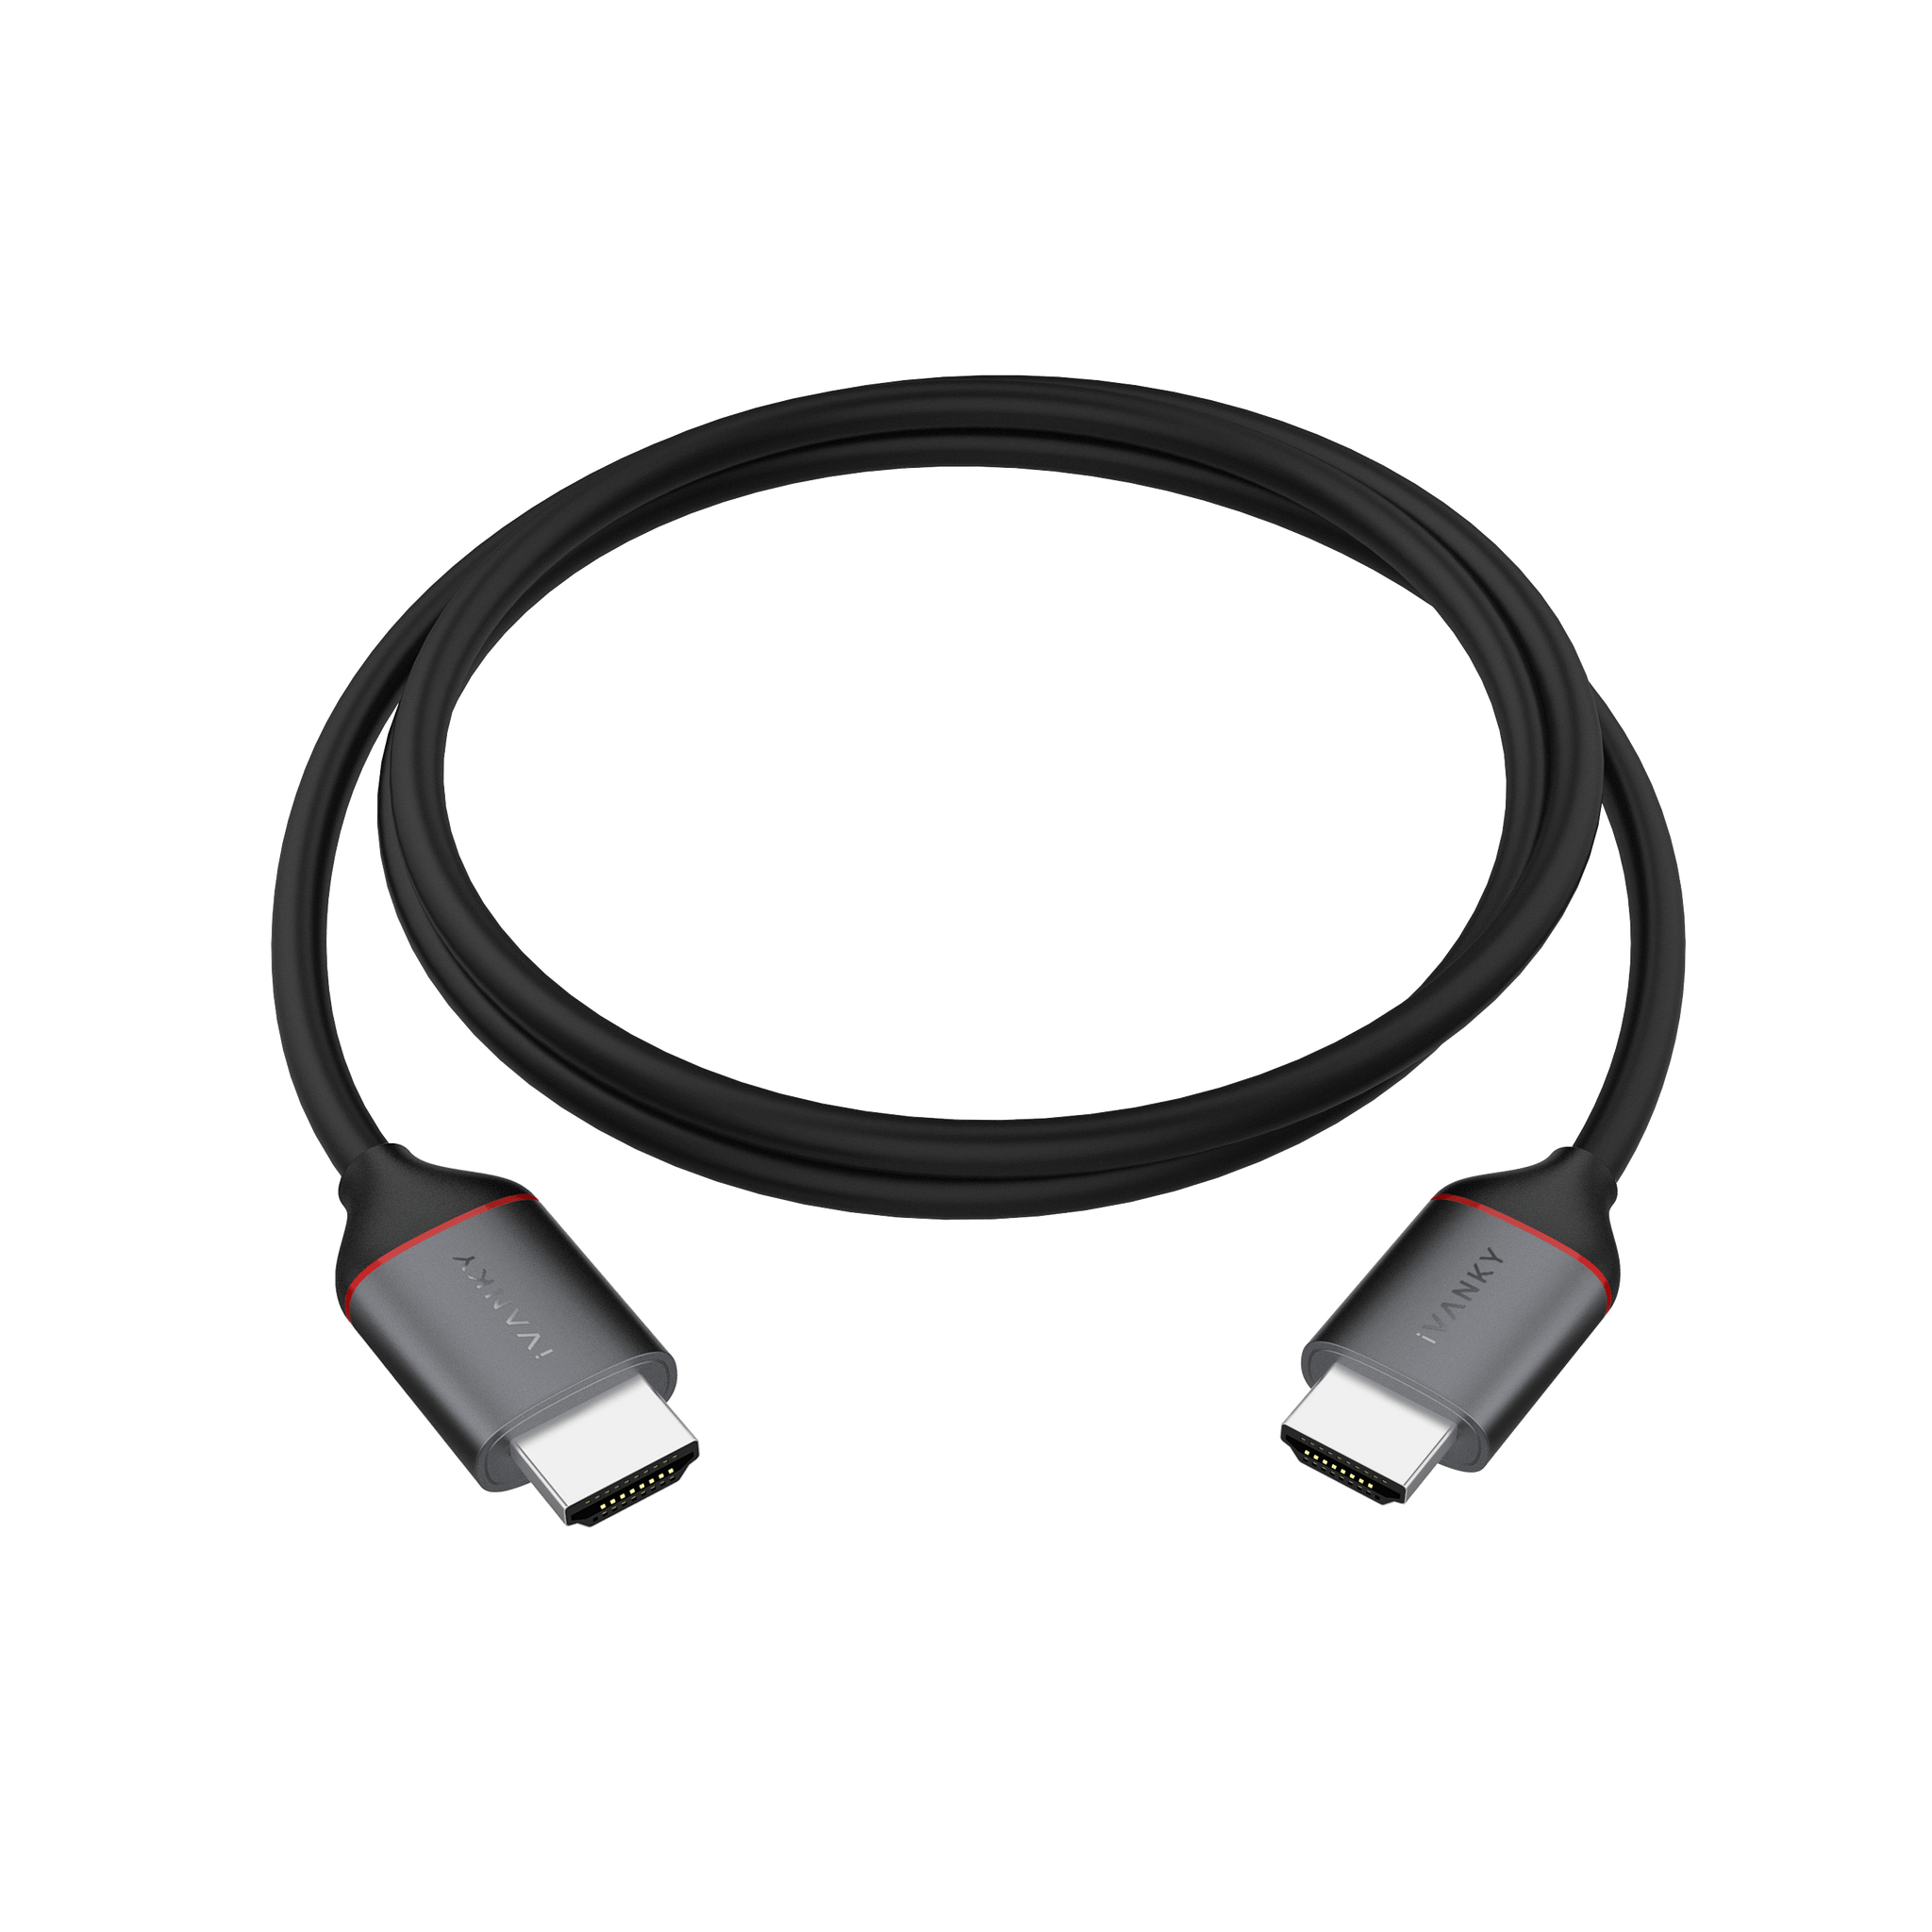 MICRO HDMI CABLE + USB-C ADAPTER - KDC USA